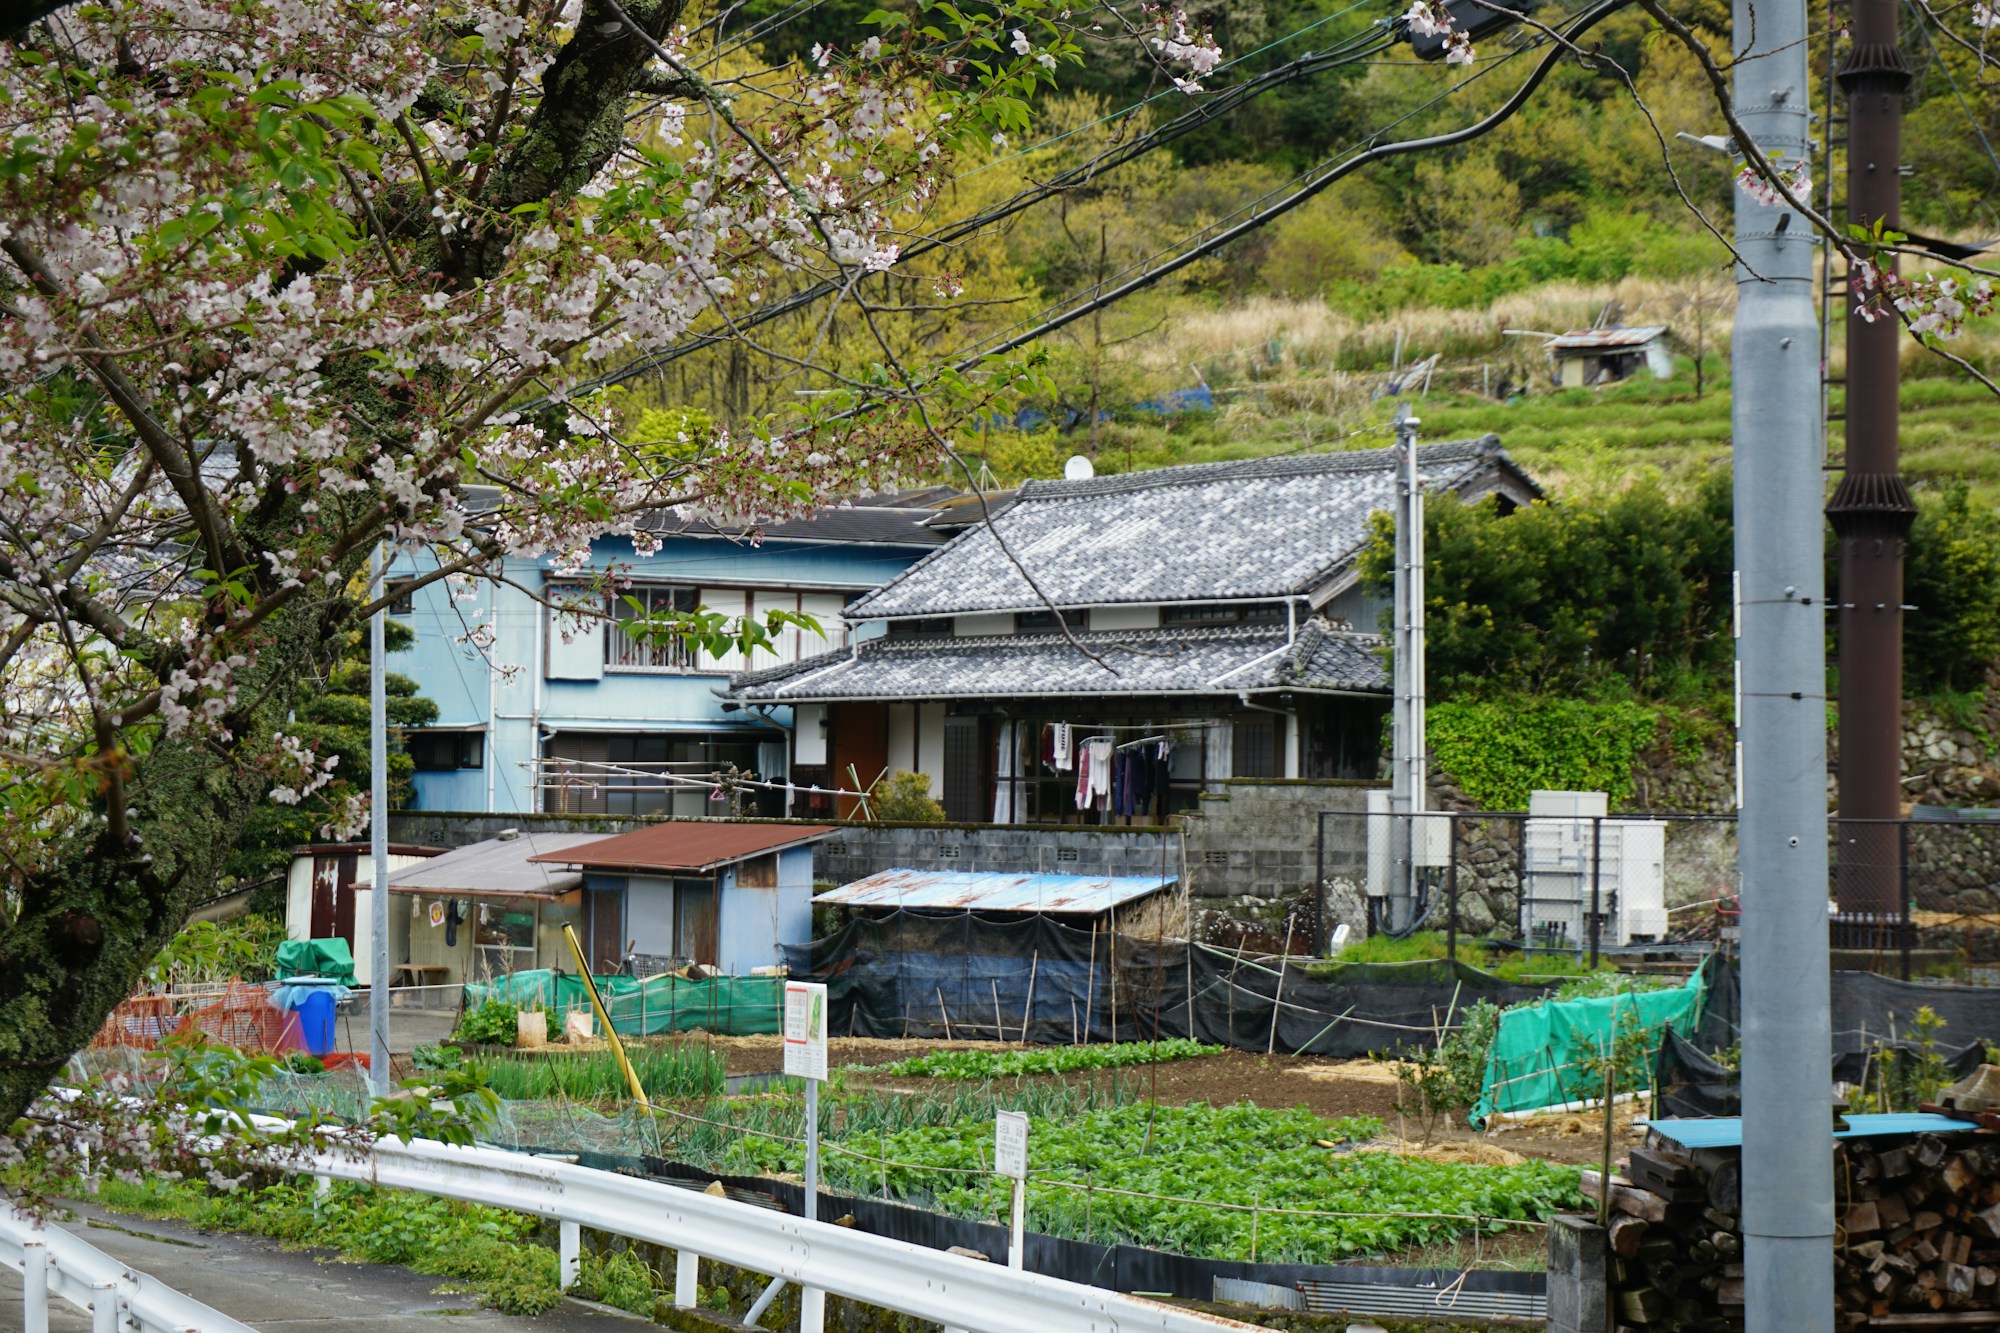 Discover Izu: Exploring Local Culture & Traditions